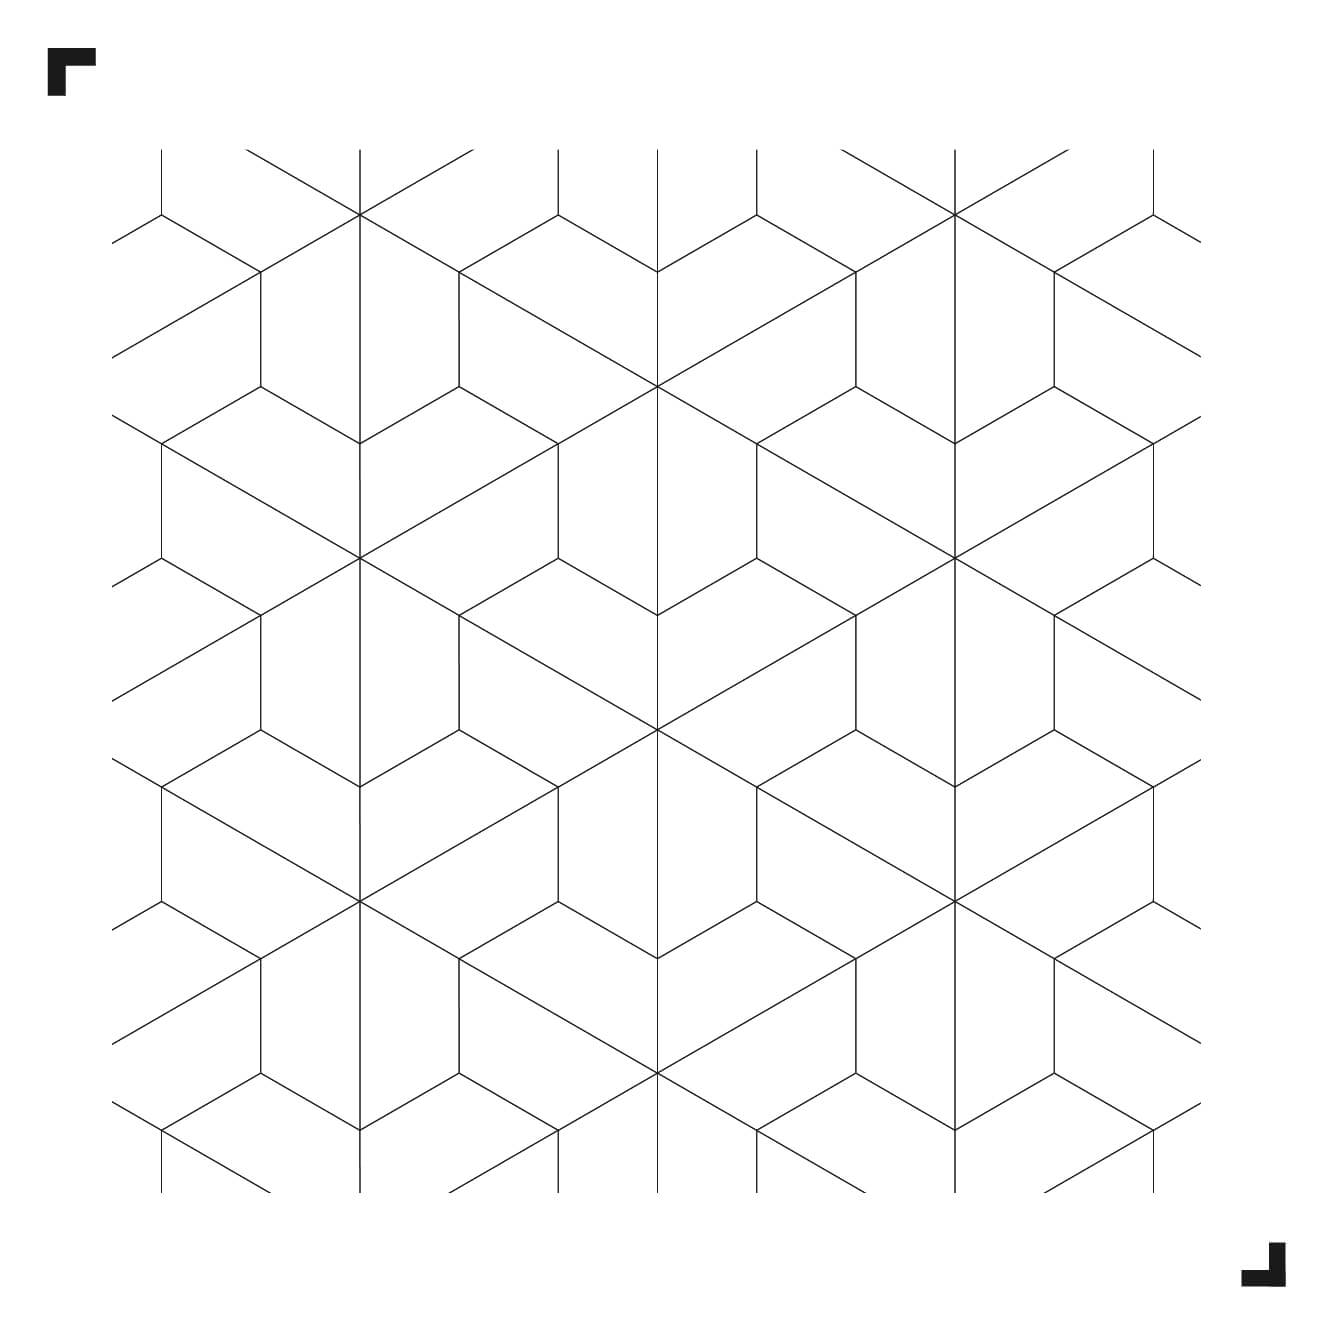 schwarz-weiße Zeichnung des Mesh-Musters - Moduleo Moods - Luxury Vinyl Tiles - Creative flooring